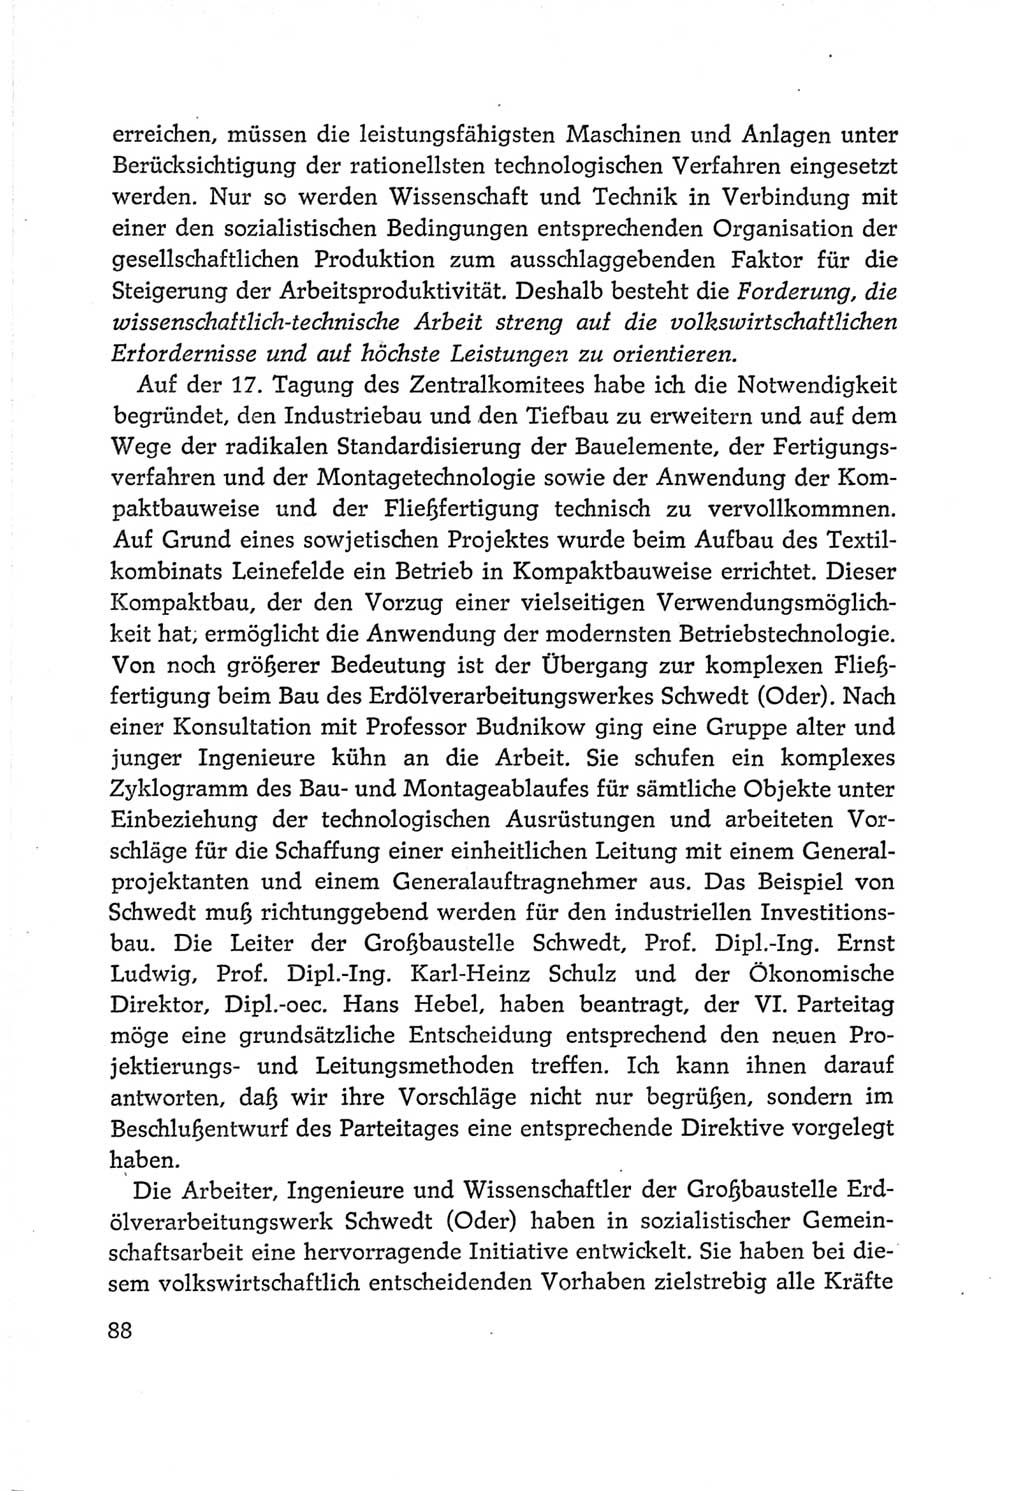 Protokoll der Verhandlungen des Ⅵ. Parteitages der Sozialistischen Einheitspartei Deutschlands (SED) [Deutsche Demokratische Republik (DDR)] 1963, Band Ⅰ, Seite 88 (Prot. Verh. Ⅵ. PT SED DDR 1963, Bd. Ⅰ, S. 88)